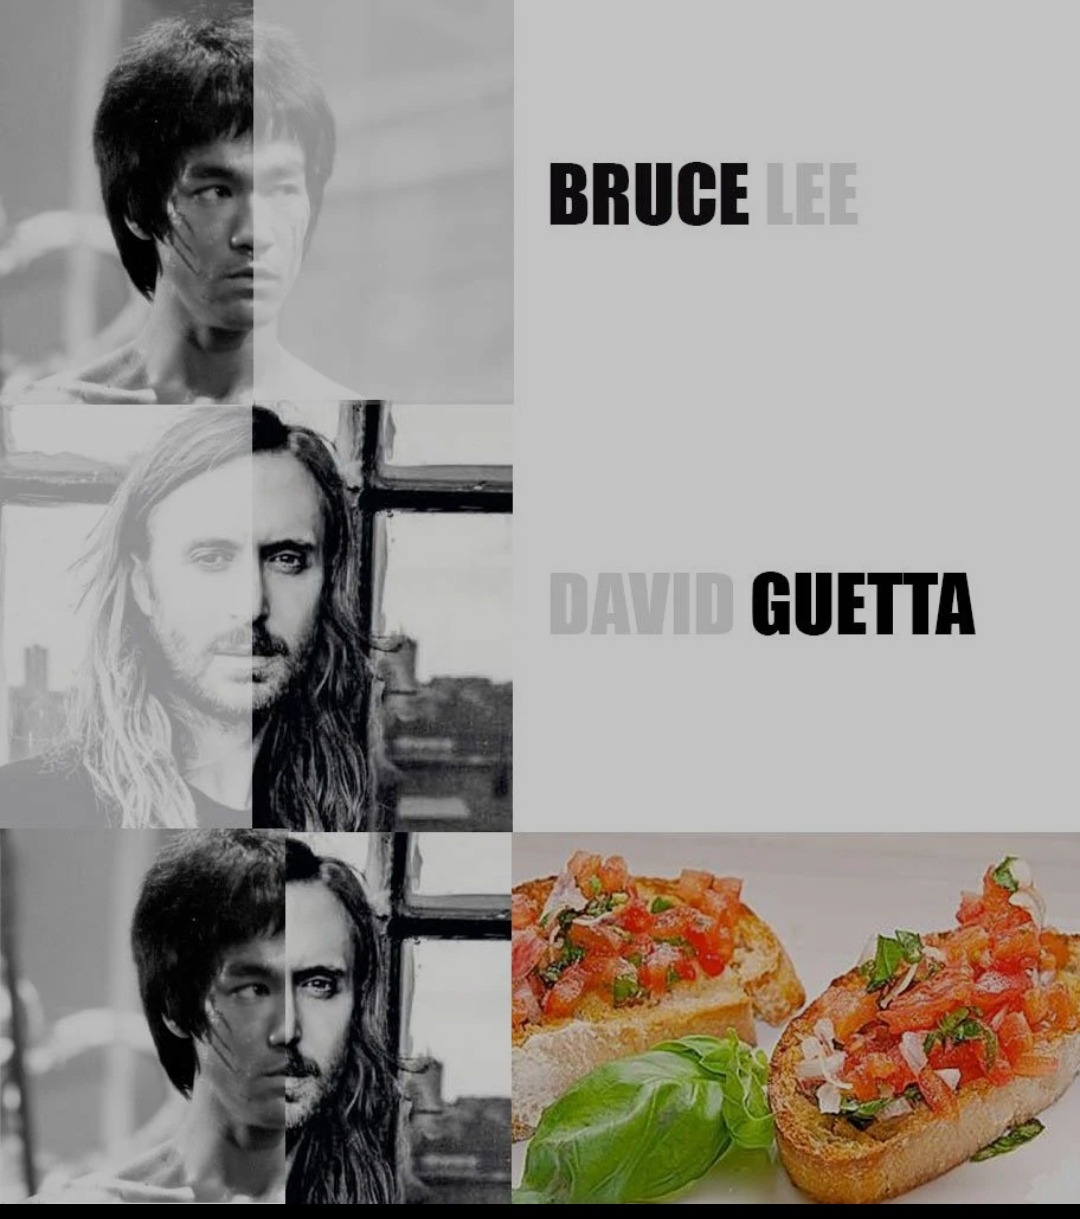 Bruce Lee • David Guetta • bruschetta • funny • meme • catchymemes